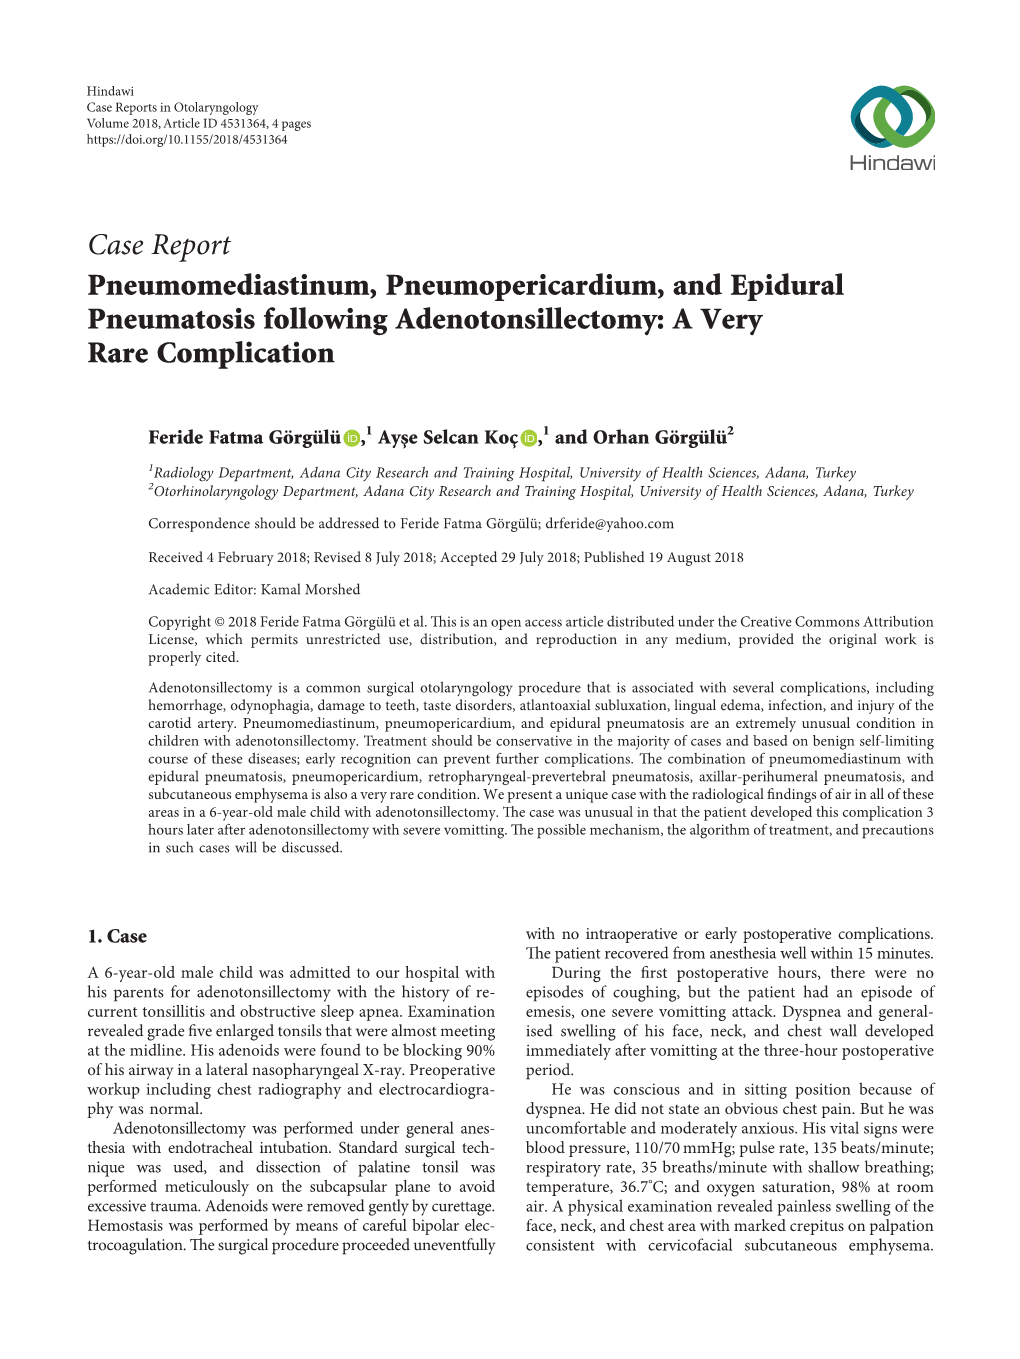 Case Report Pneumomediastinum Pneumopericardium And Epidural